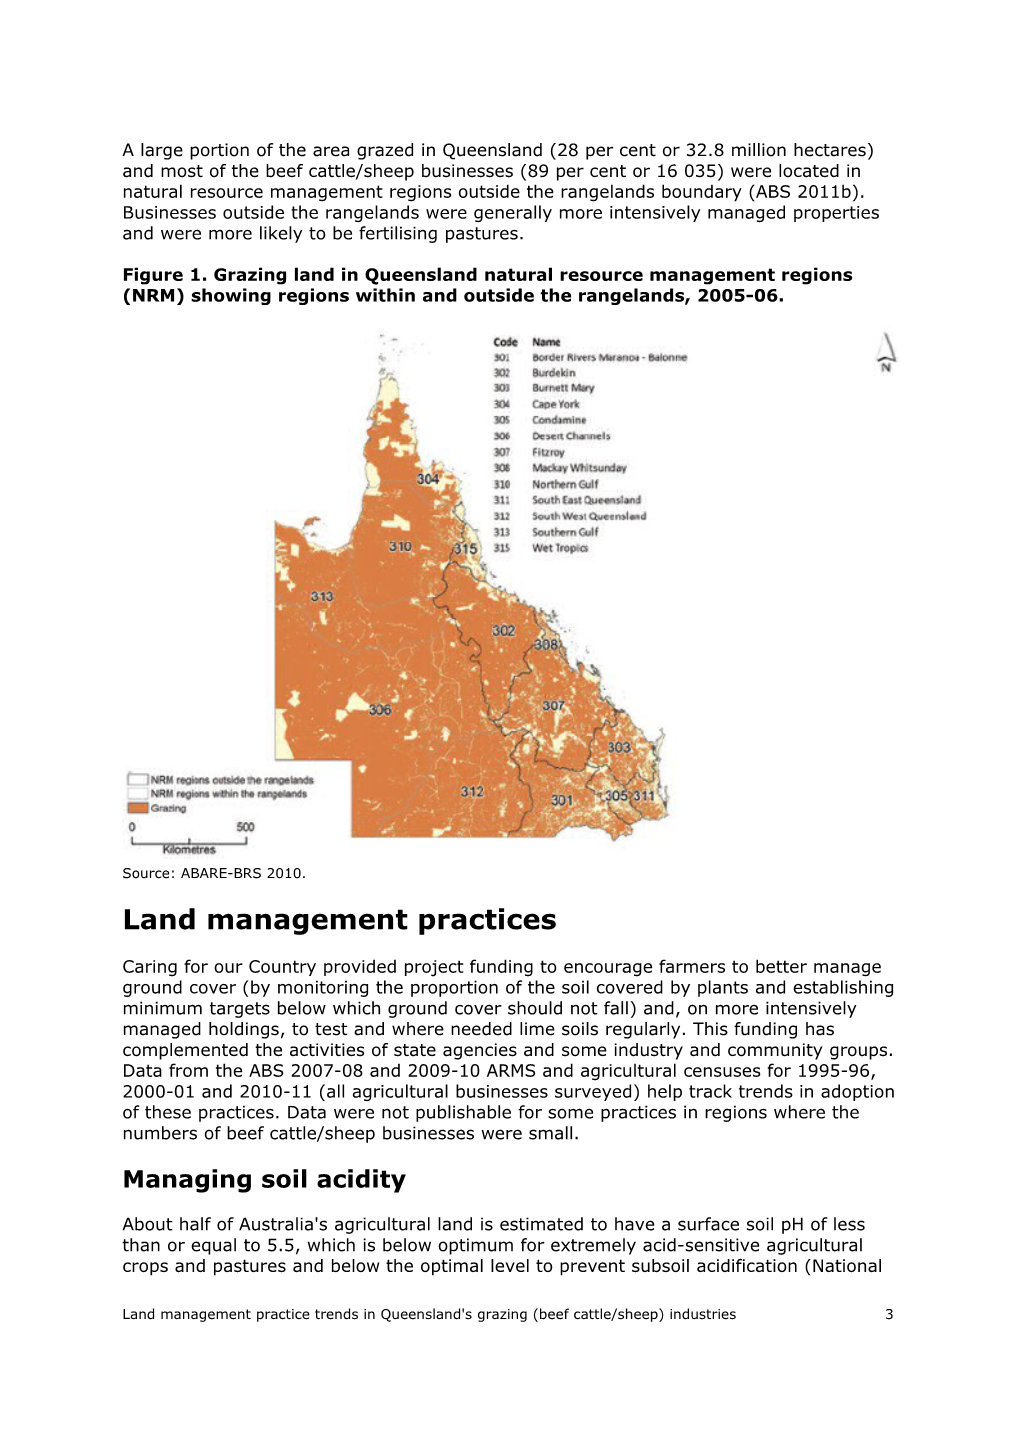 Land Management Practice Trends in Queensland's Grazing (Beef Cattle/Sheep) Industries